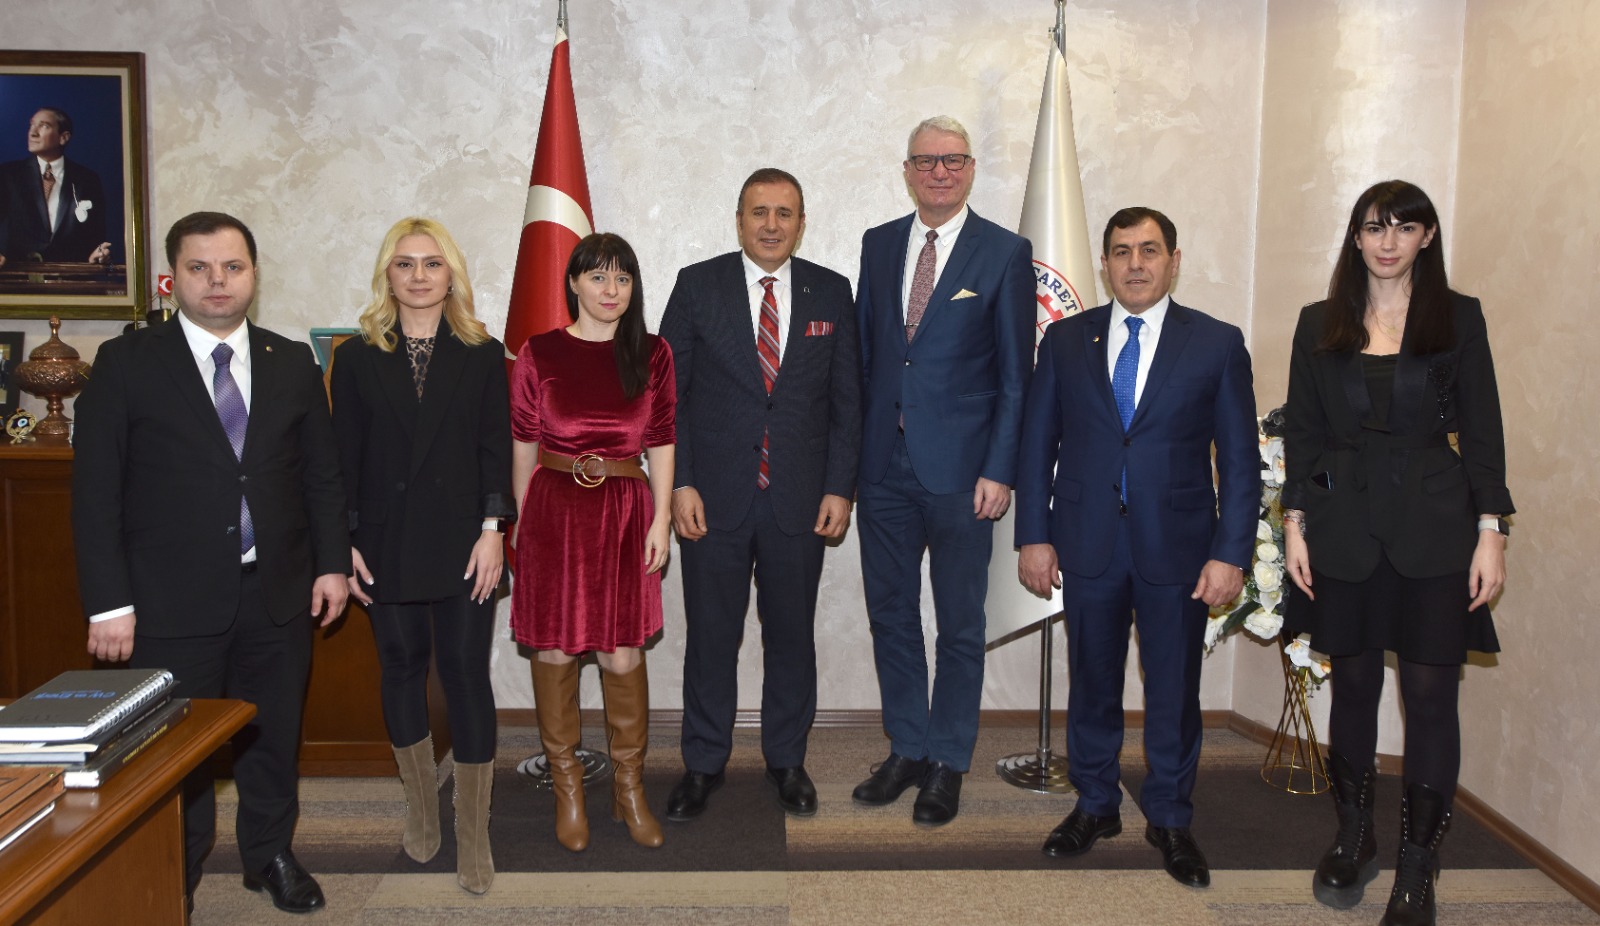 Letonya’nın Ankara Büyükelçisi Peteris Vaivars’ten TTSO’ya ziyaret